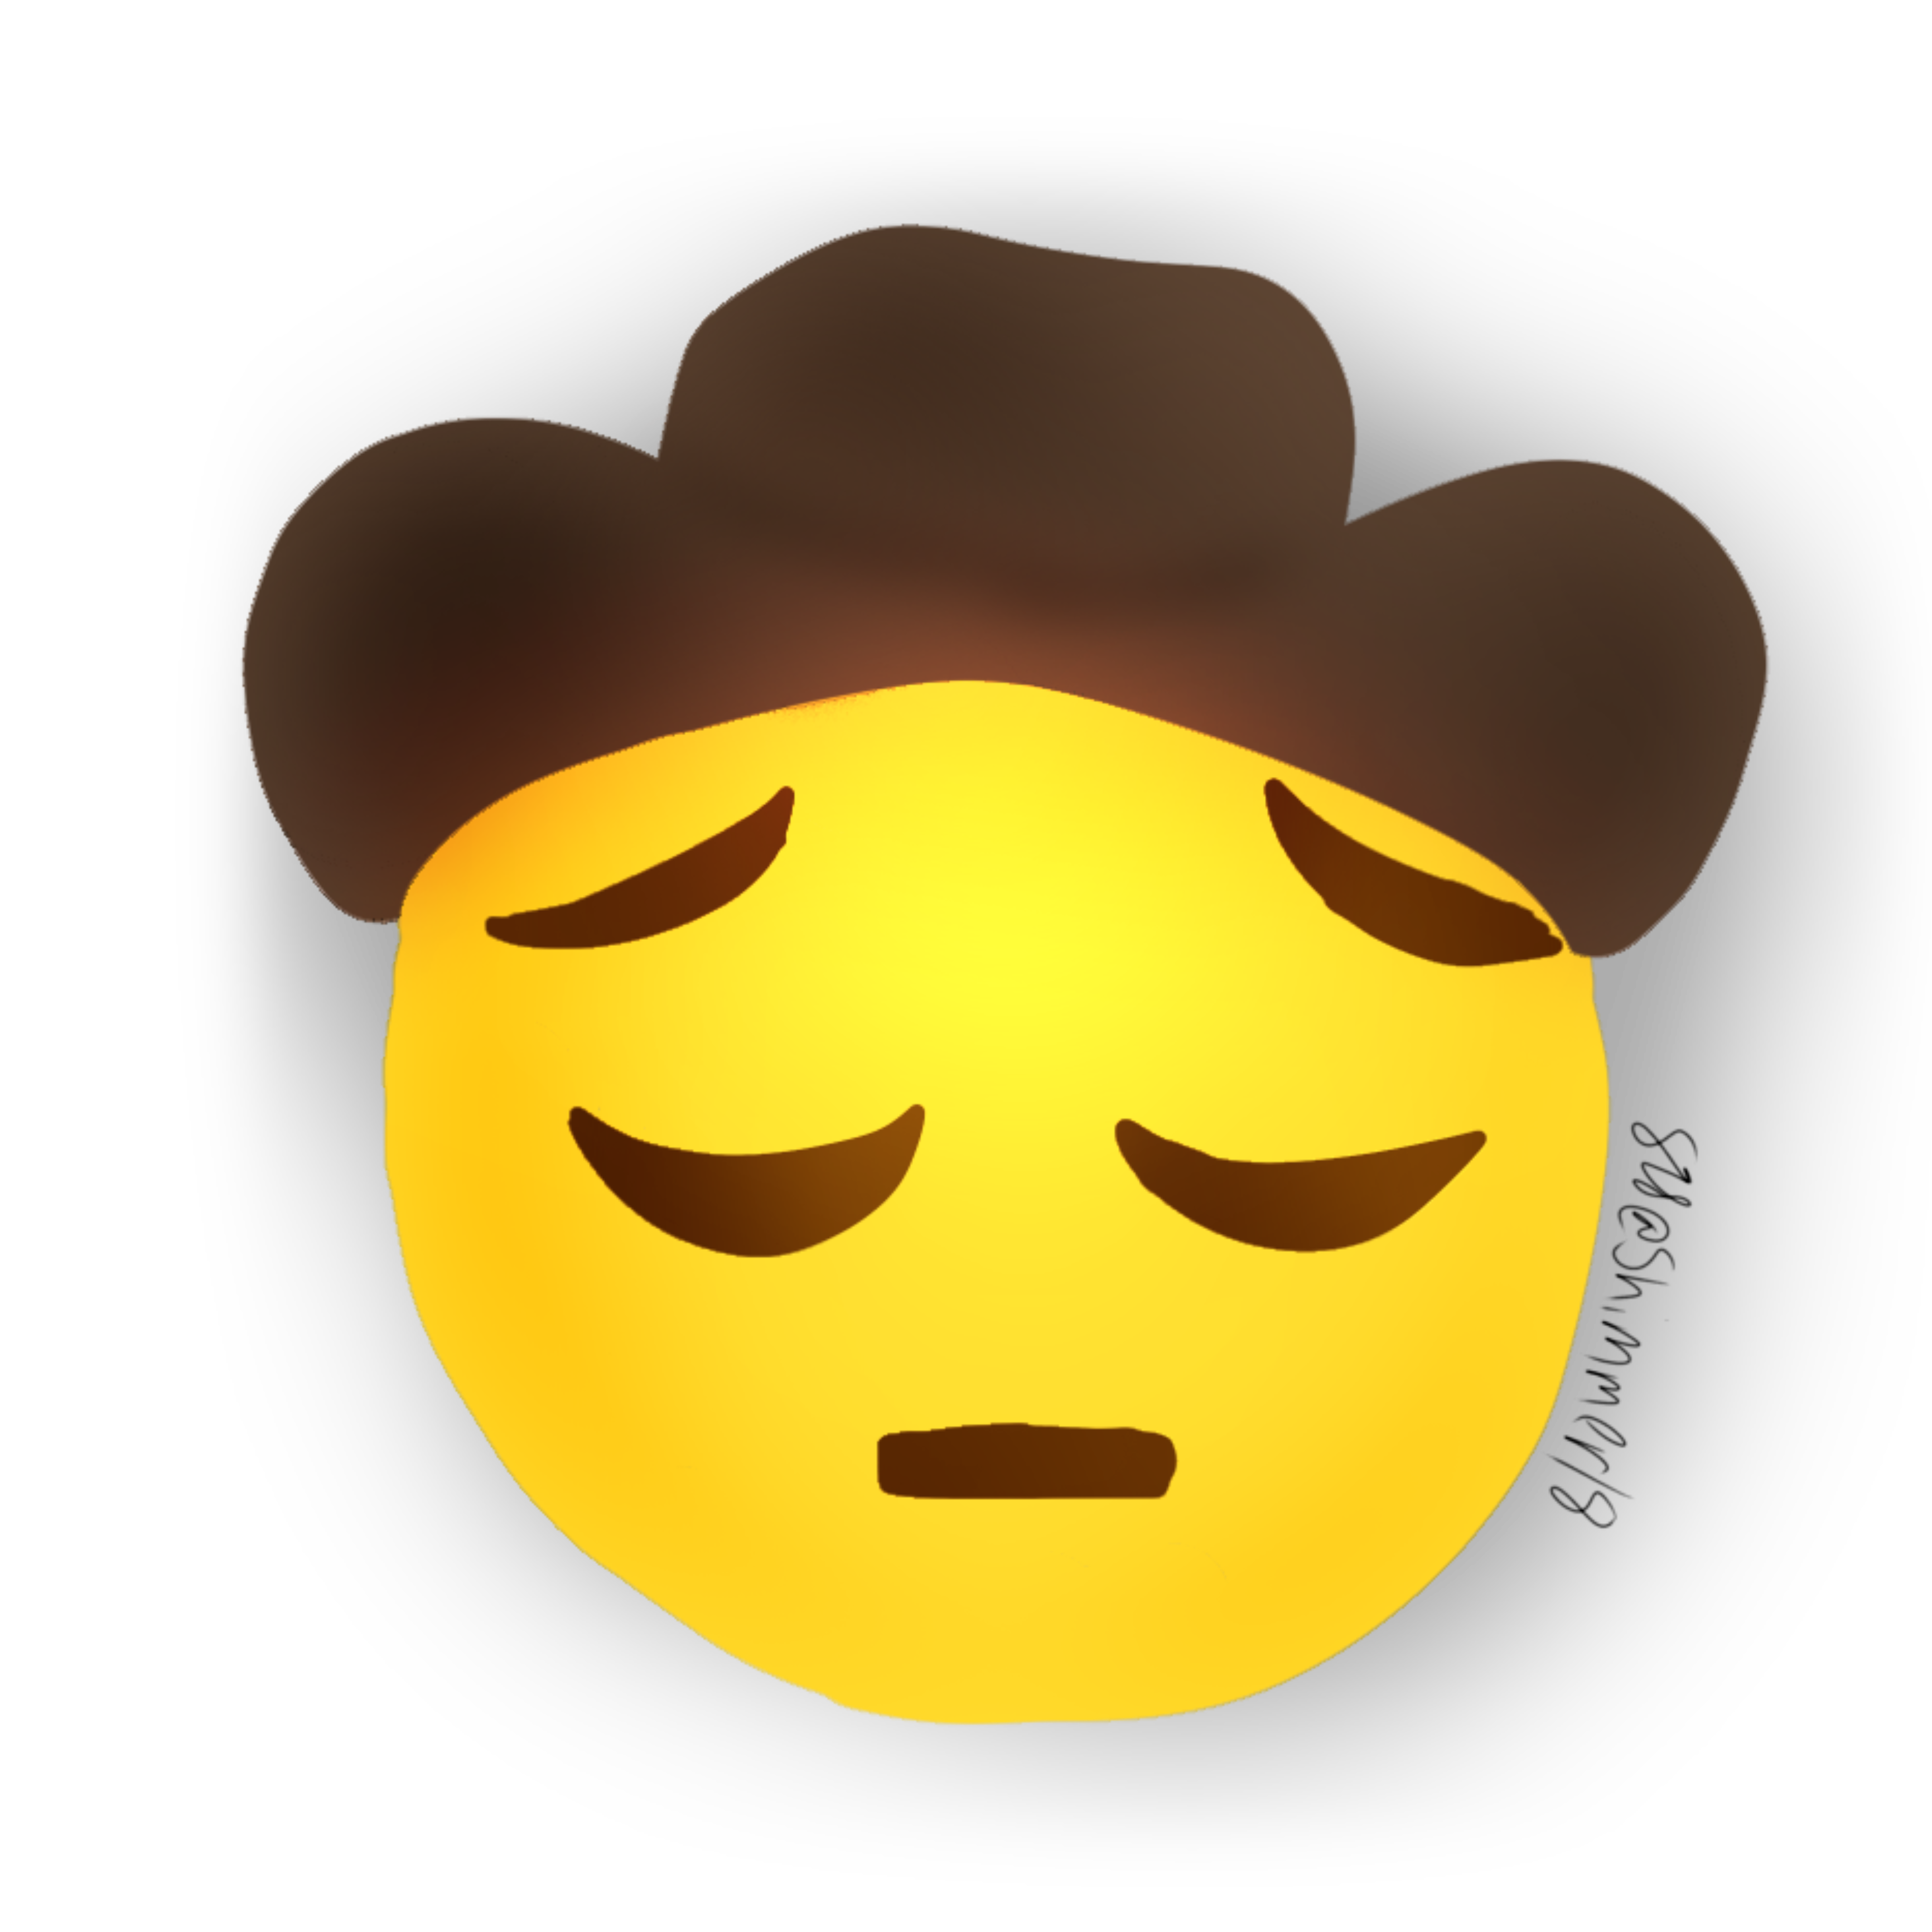 Sad Cowboy Emoji Gif : 'sad cowboy emoji' by willow knight. 